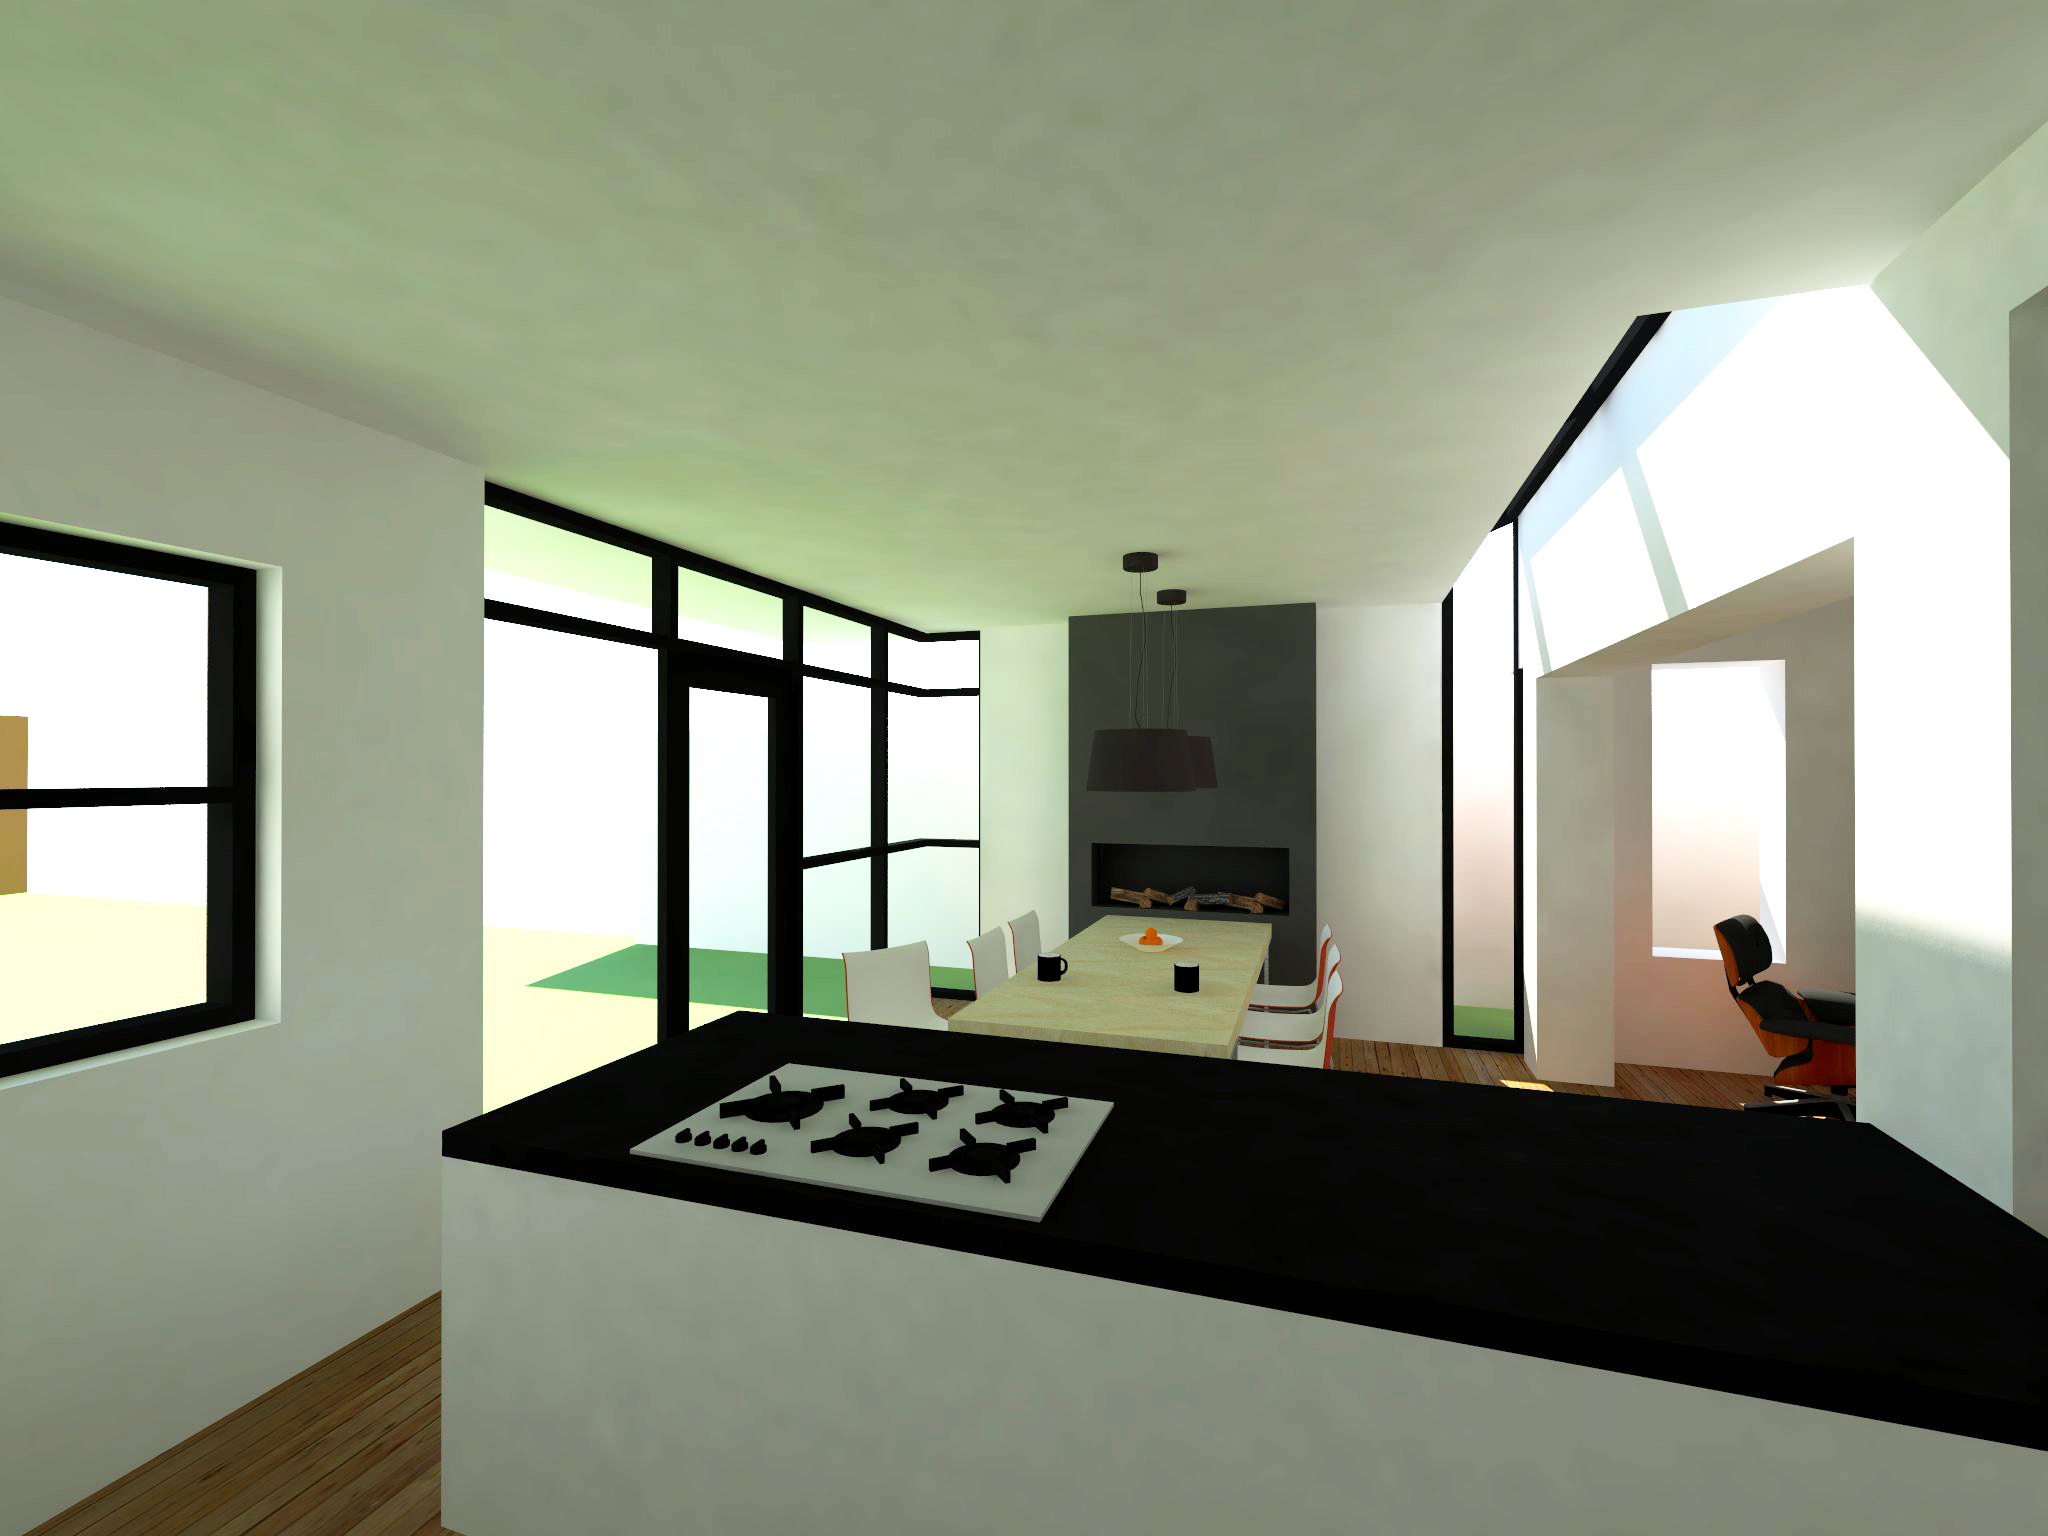 Atelier007-3D-monument-verbouwing-uitbreiding-concept-interieur-stucwerk-licht-zicht-keuken-eetkeuken-eetkamer